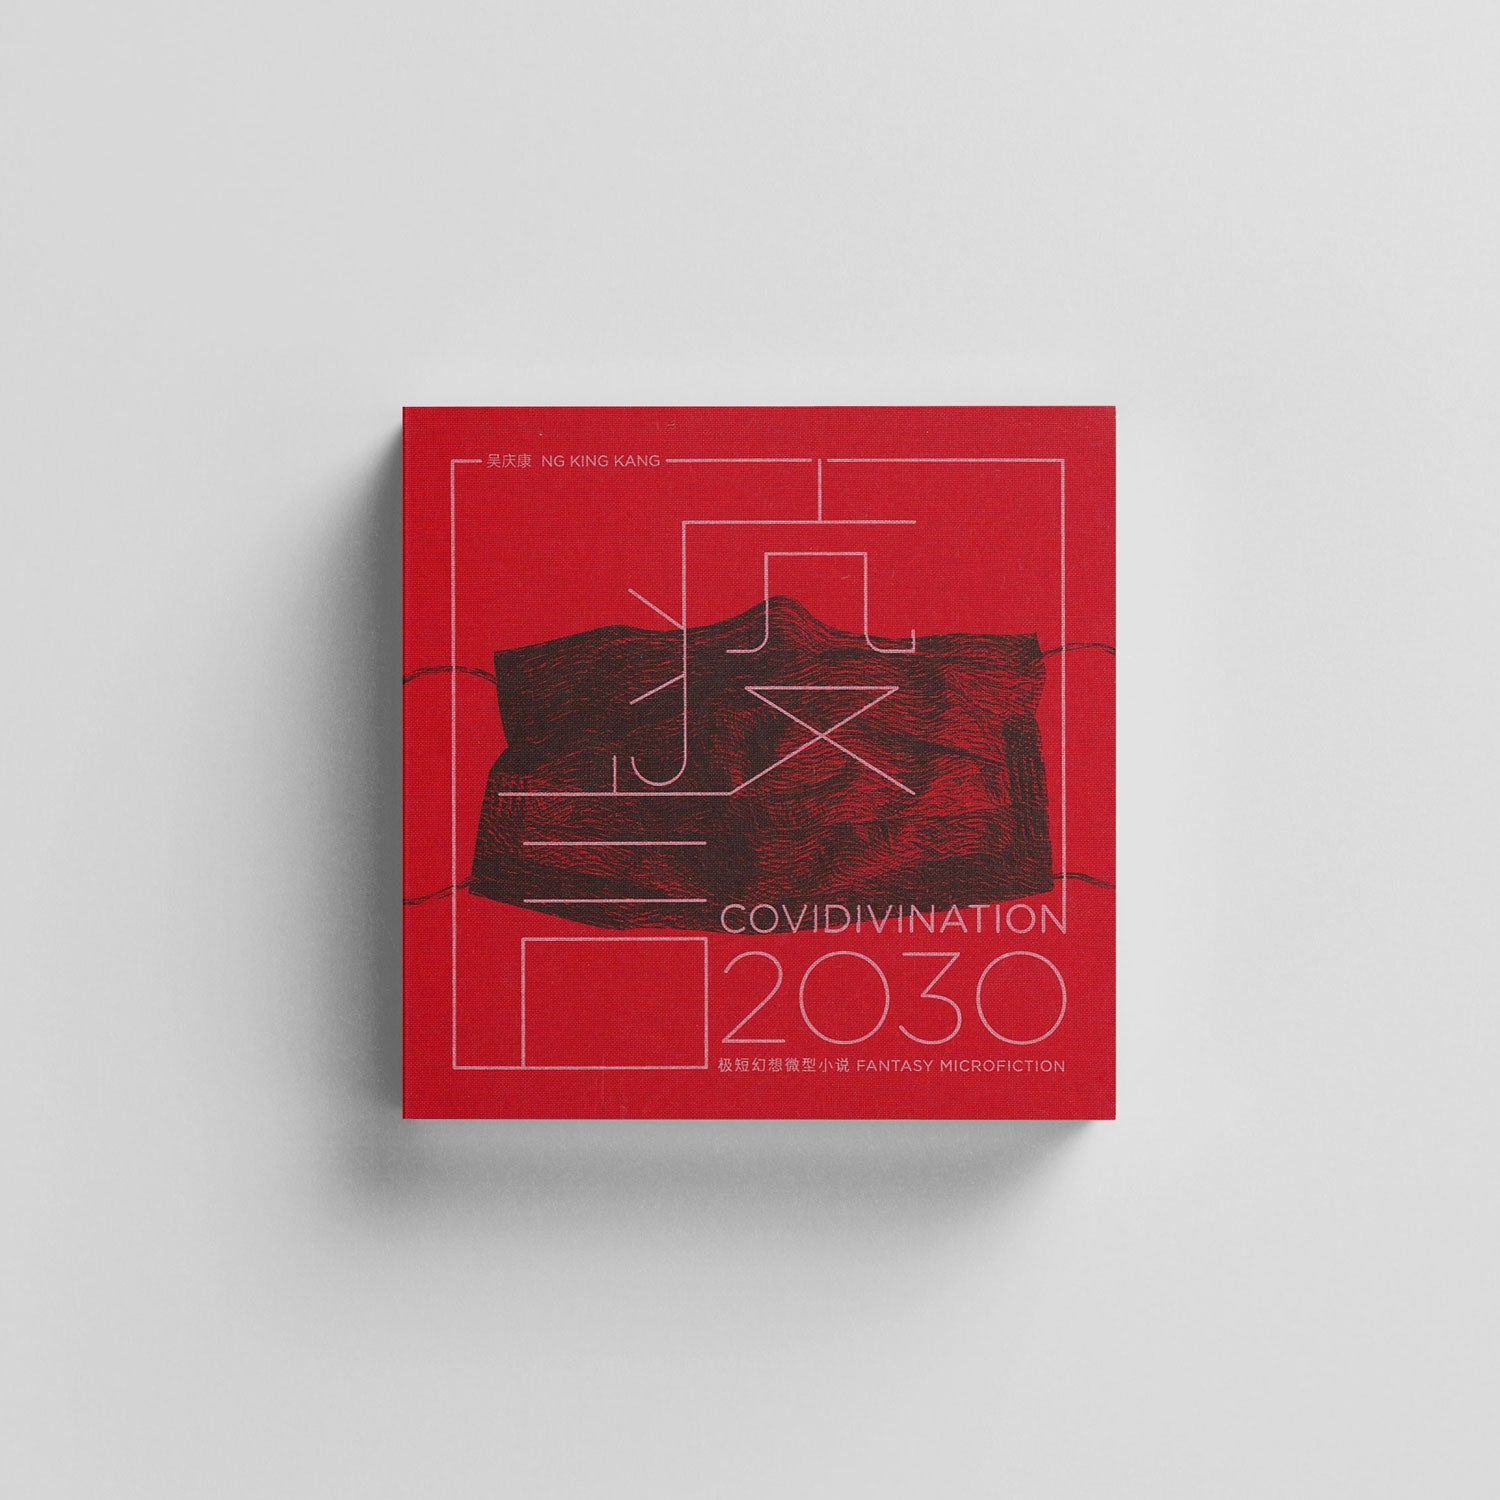 Covidivination 2030 (疫言2030)